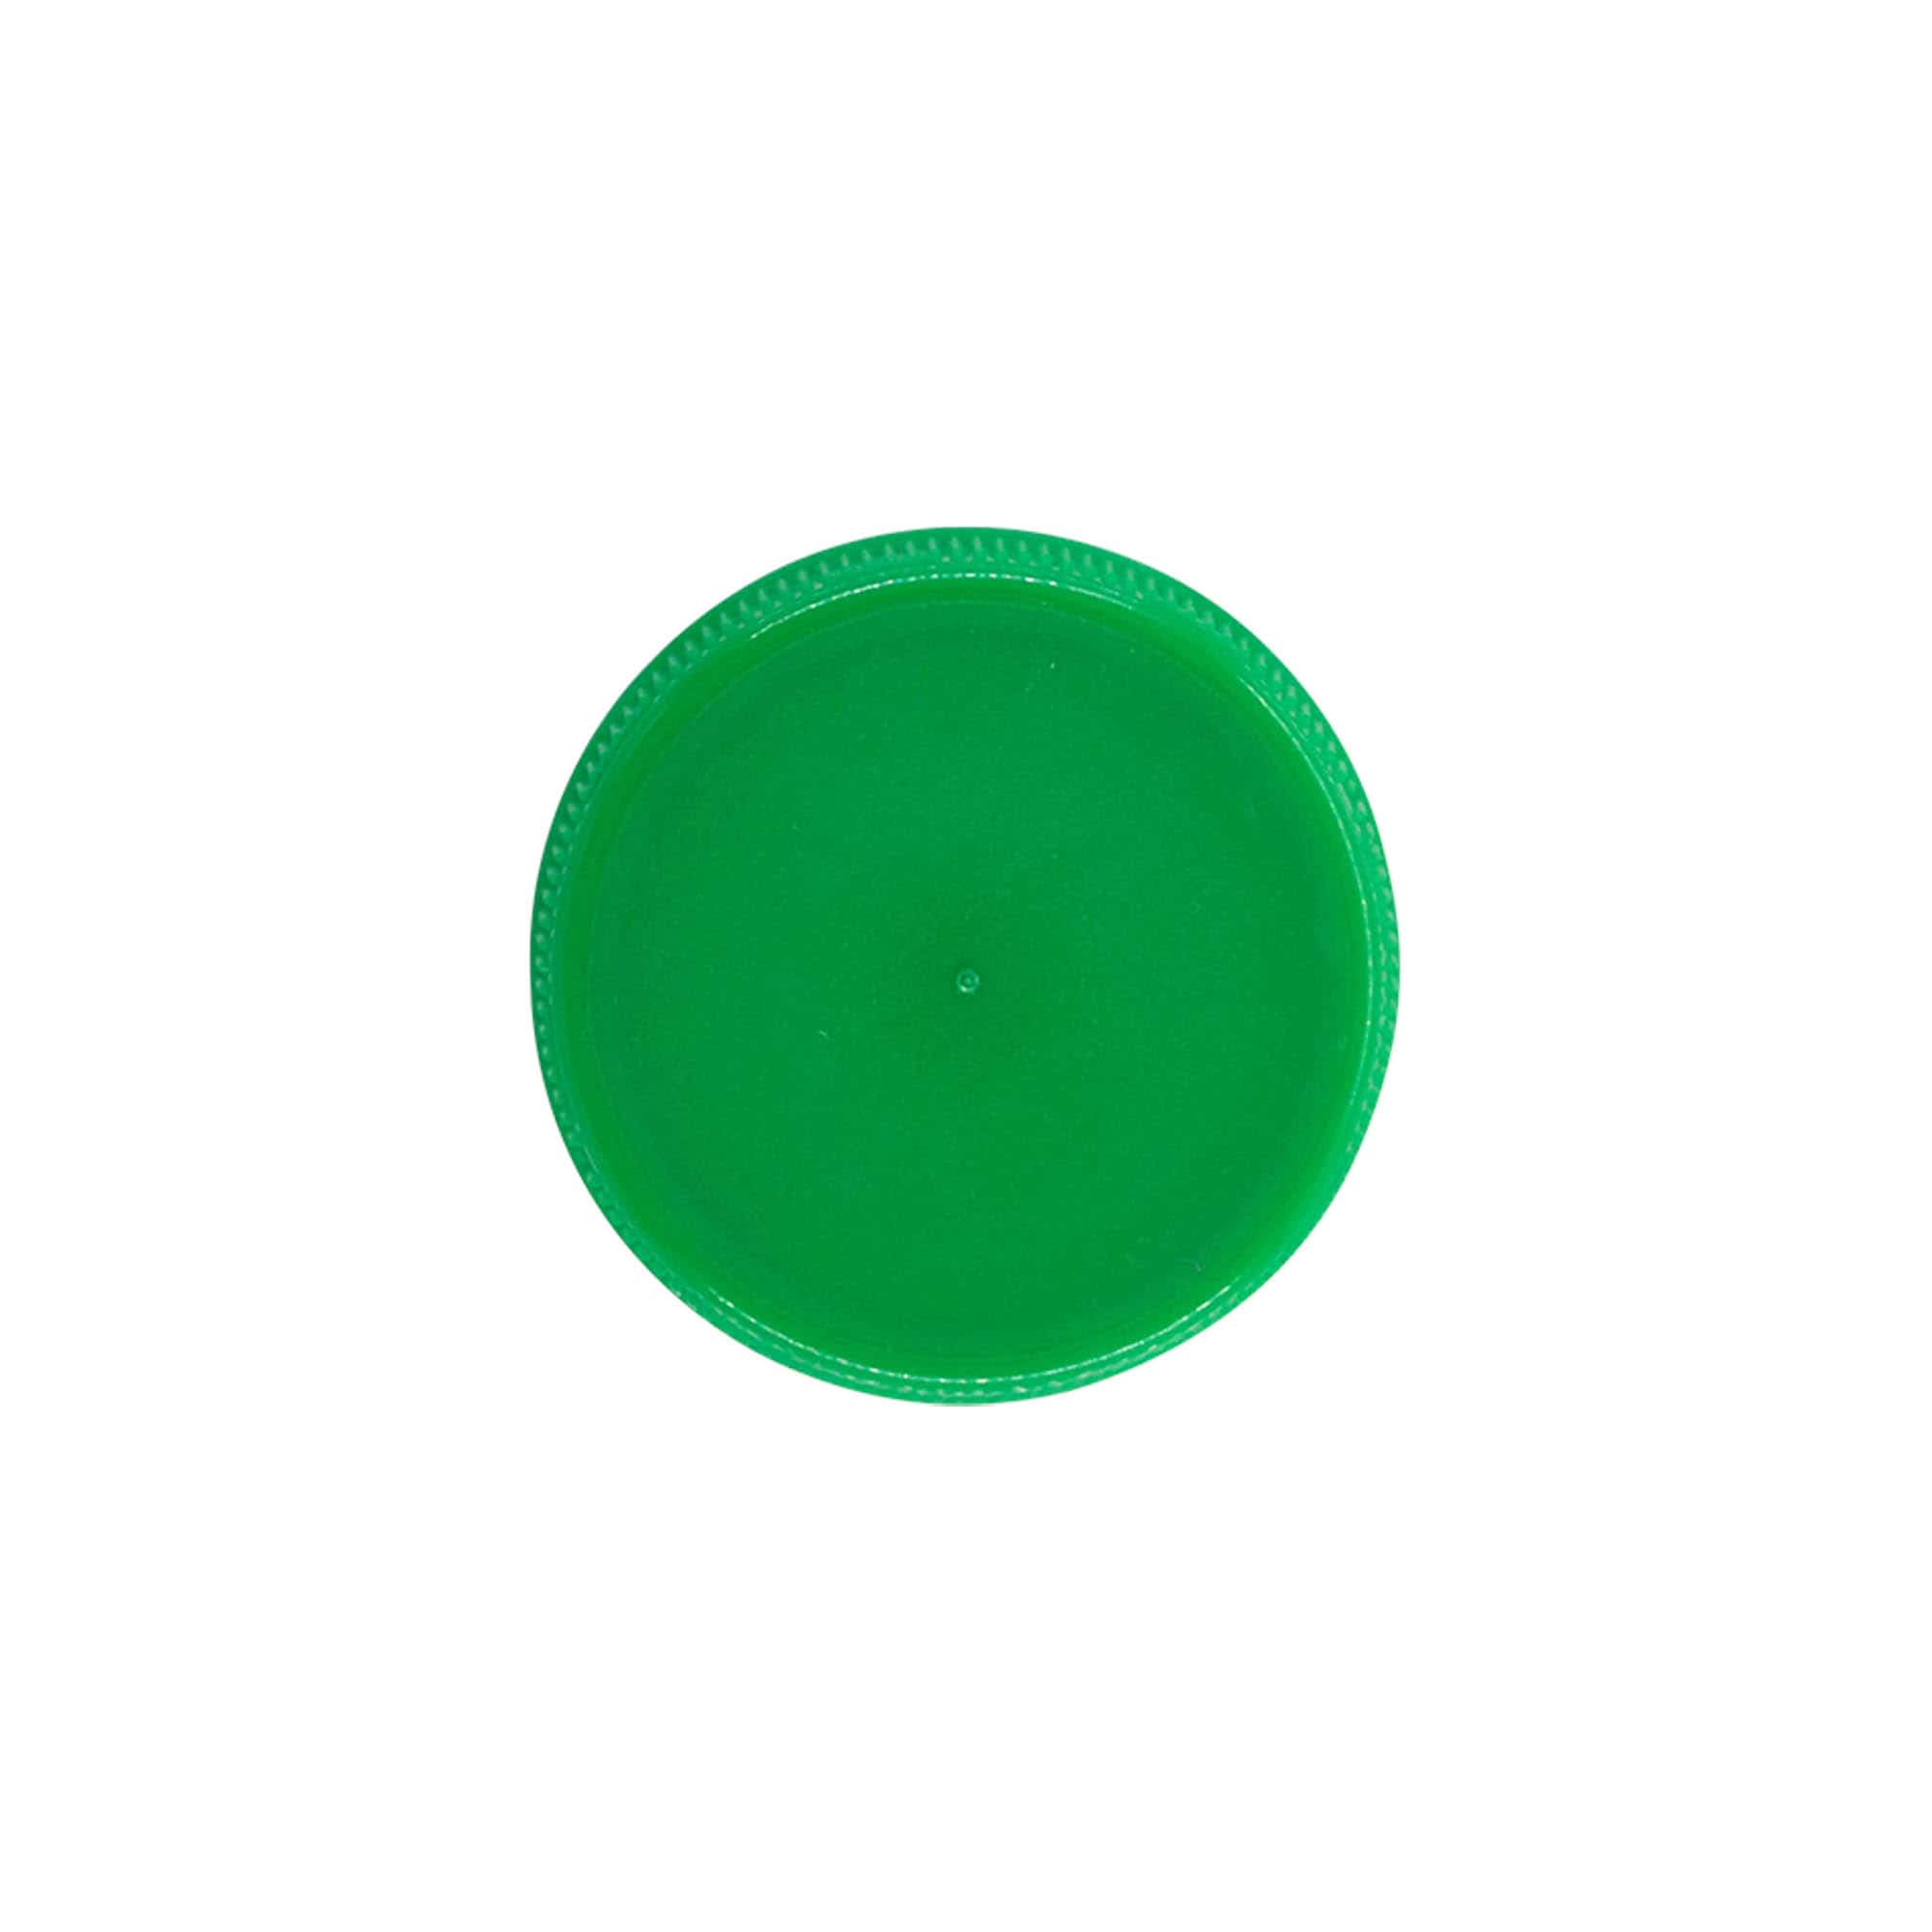 Zakrętka gwint dwustopniowy, tworzywo sztuczne PE, kolor zielony, do zamknięcia: PET 38 mm